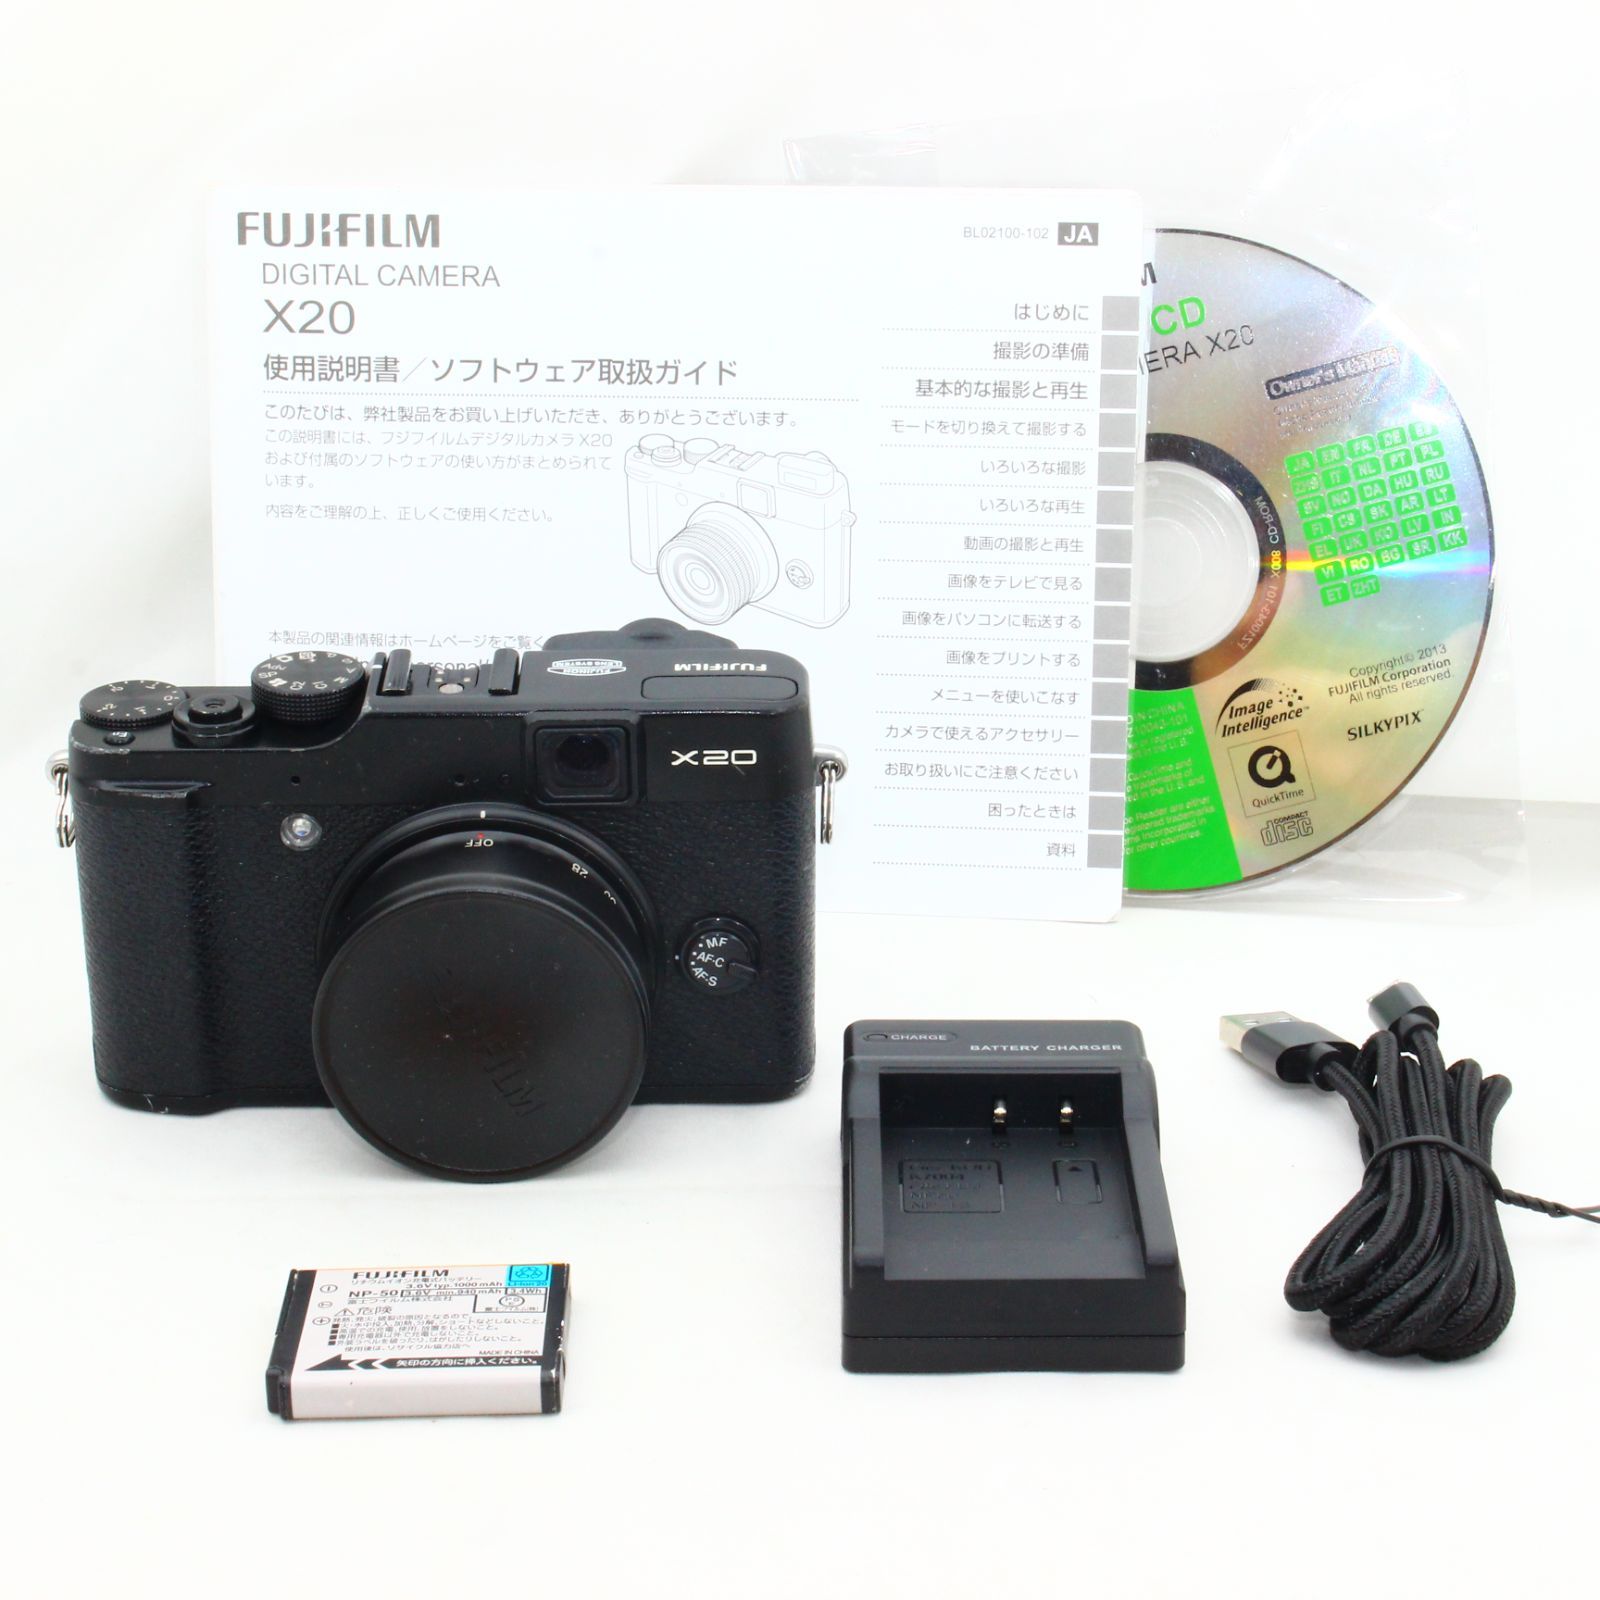 FUJIFILM デジタルカメラ X20B ブラック F FX-X20 B - M&T Camera